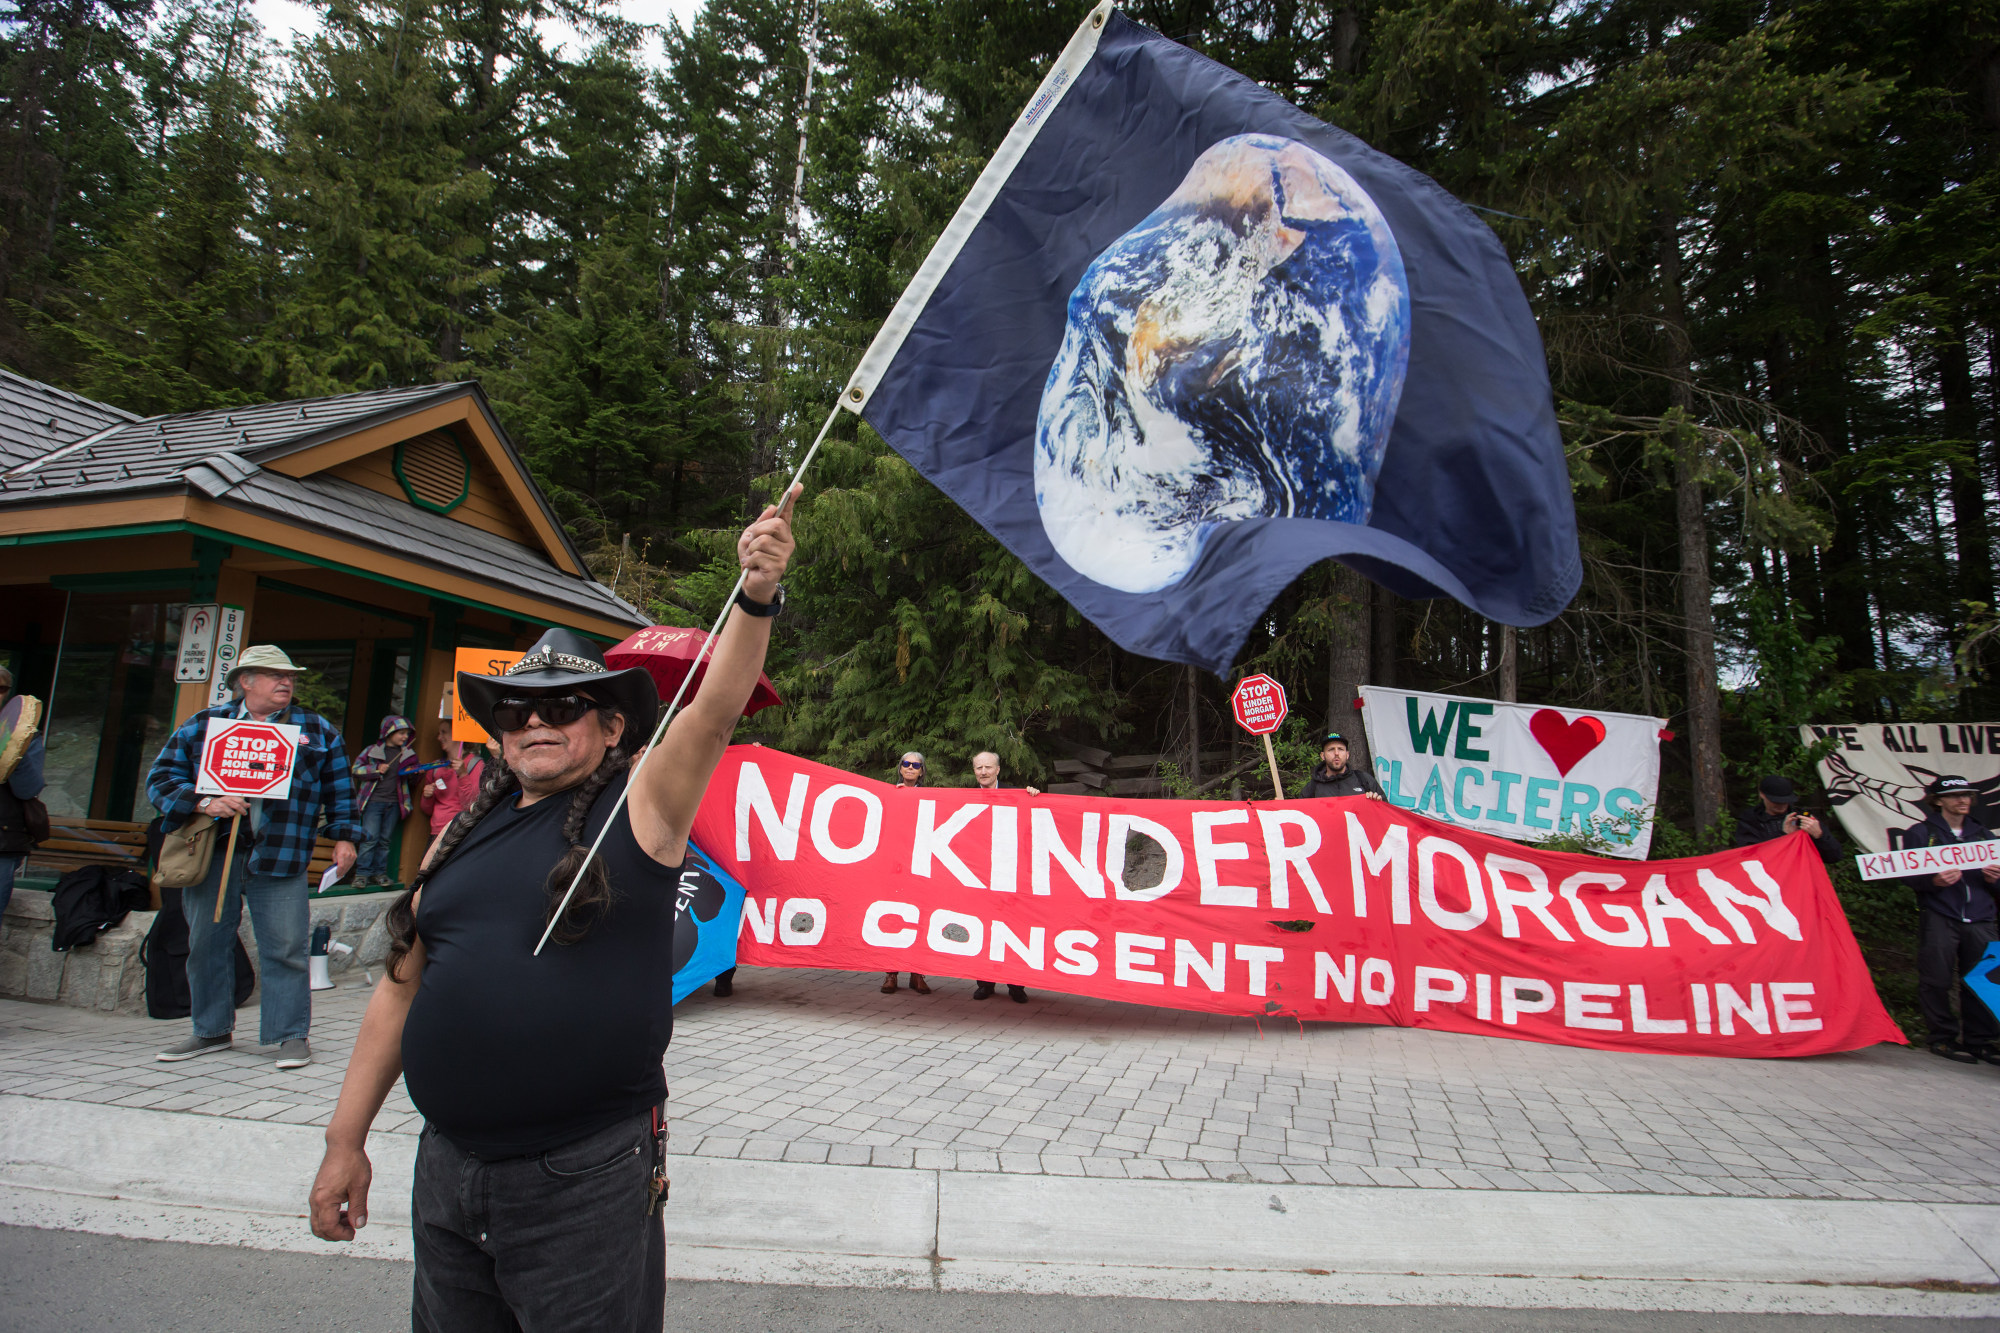 Kinder Morgan s'est heurtée à une vive opposition à son expansion du pipeline Trans Mountain avant de vendre le projet en 2018.